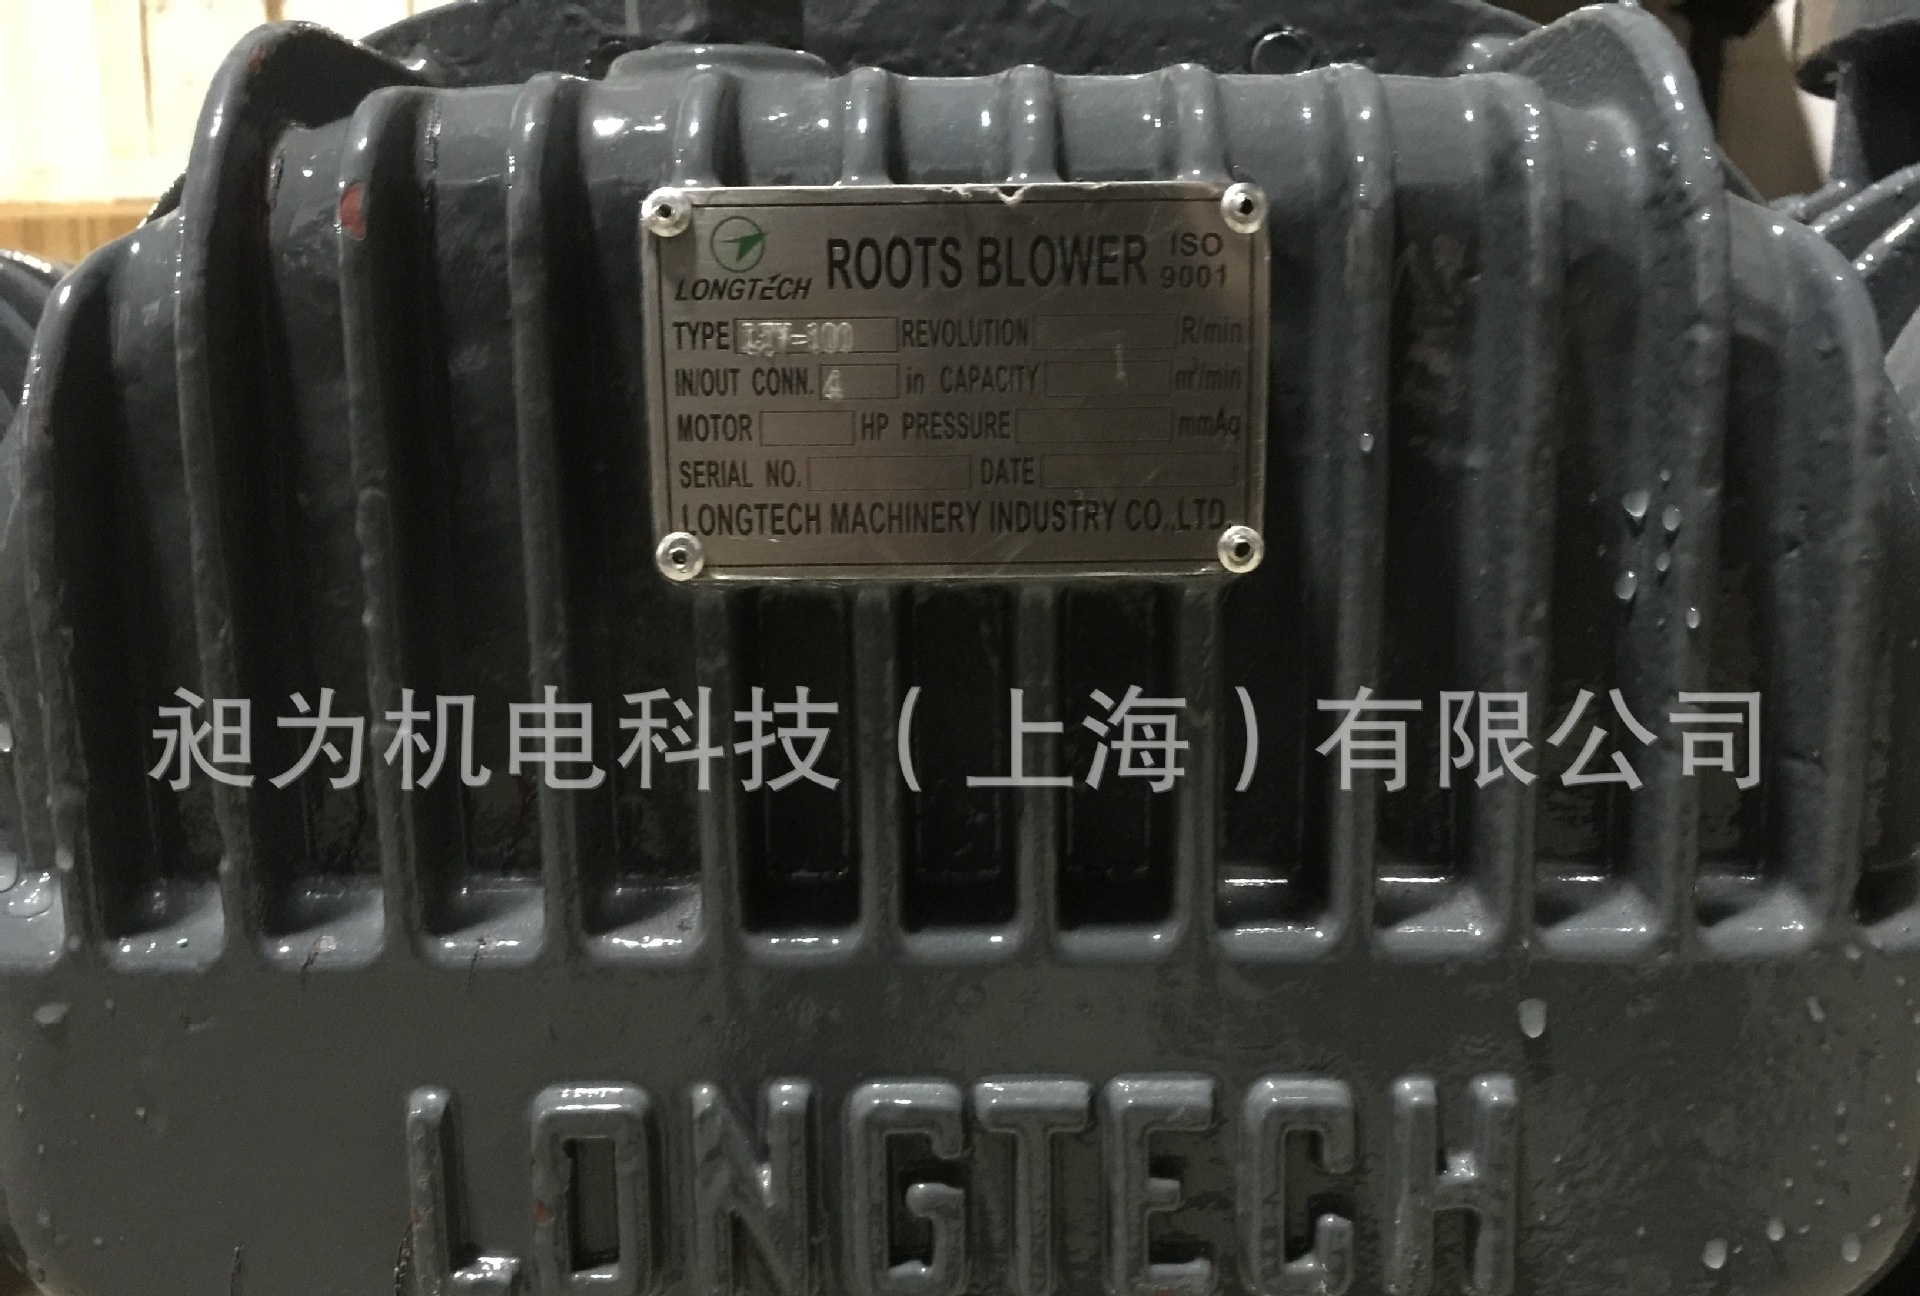 台湾龙铁罗茨鼓风机 低能源损耗  LT-80主机噪音低 罗茨真空泵